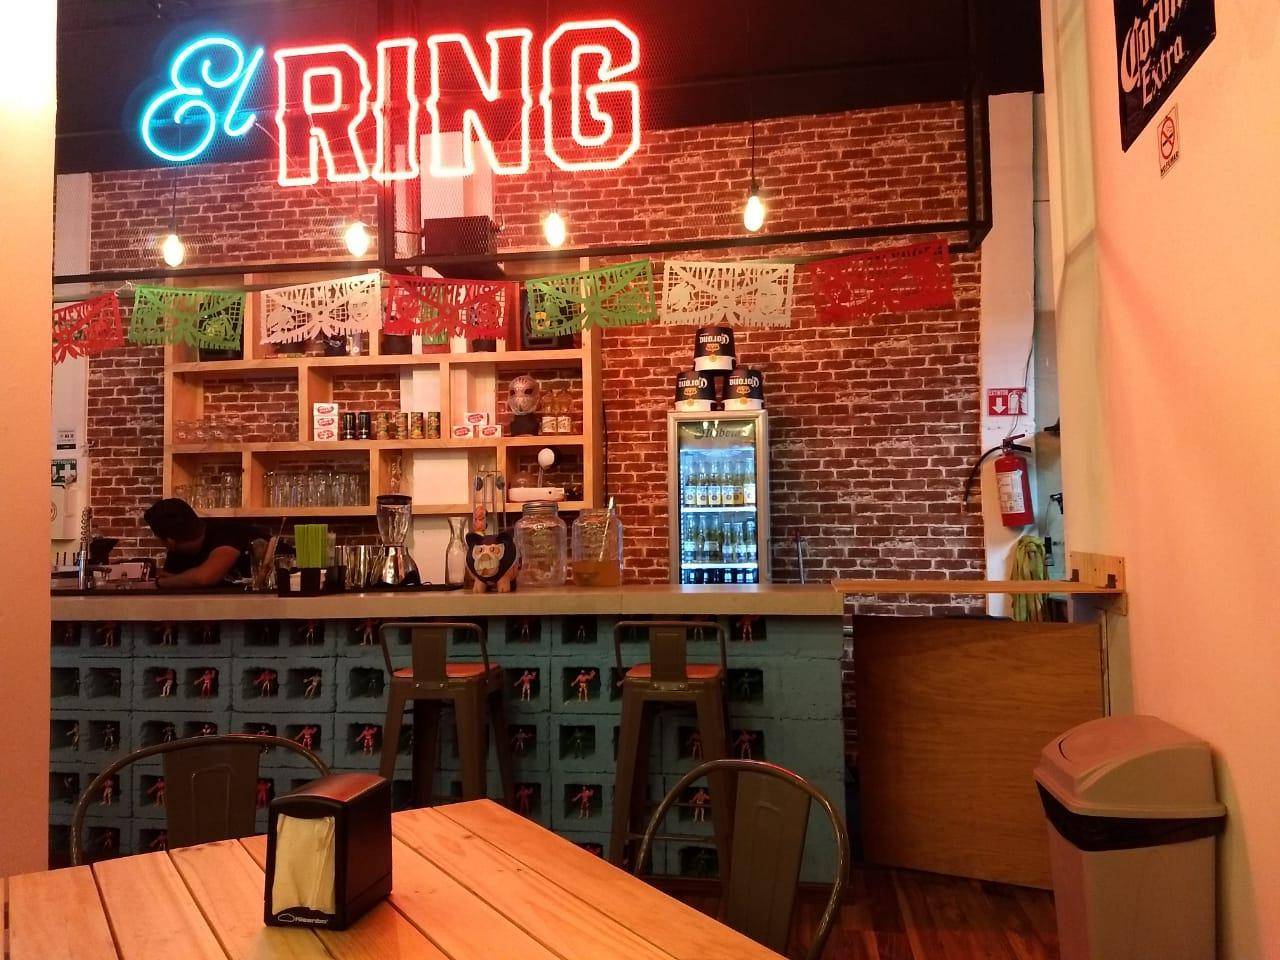 El ring VR Bar